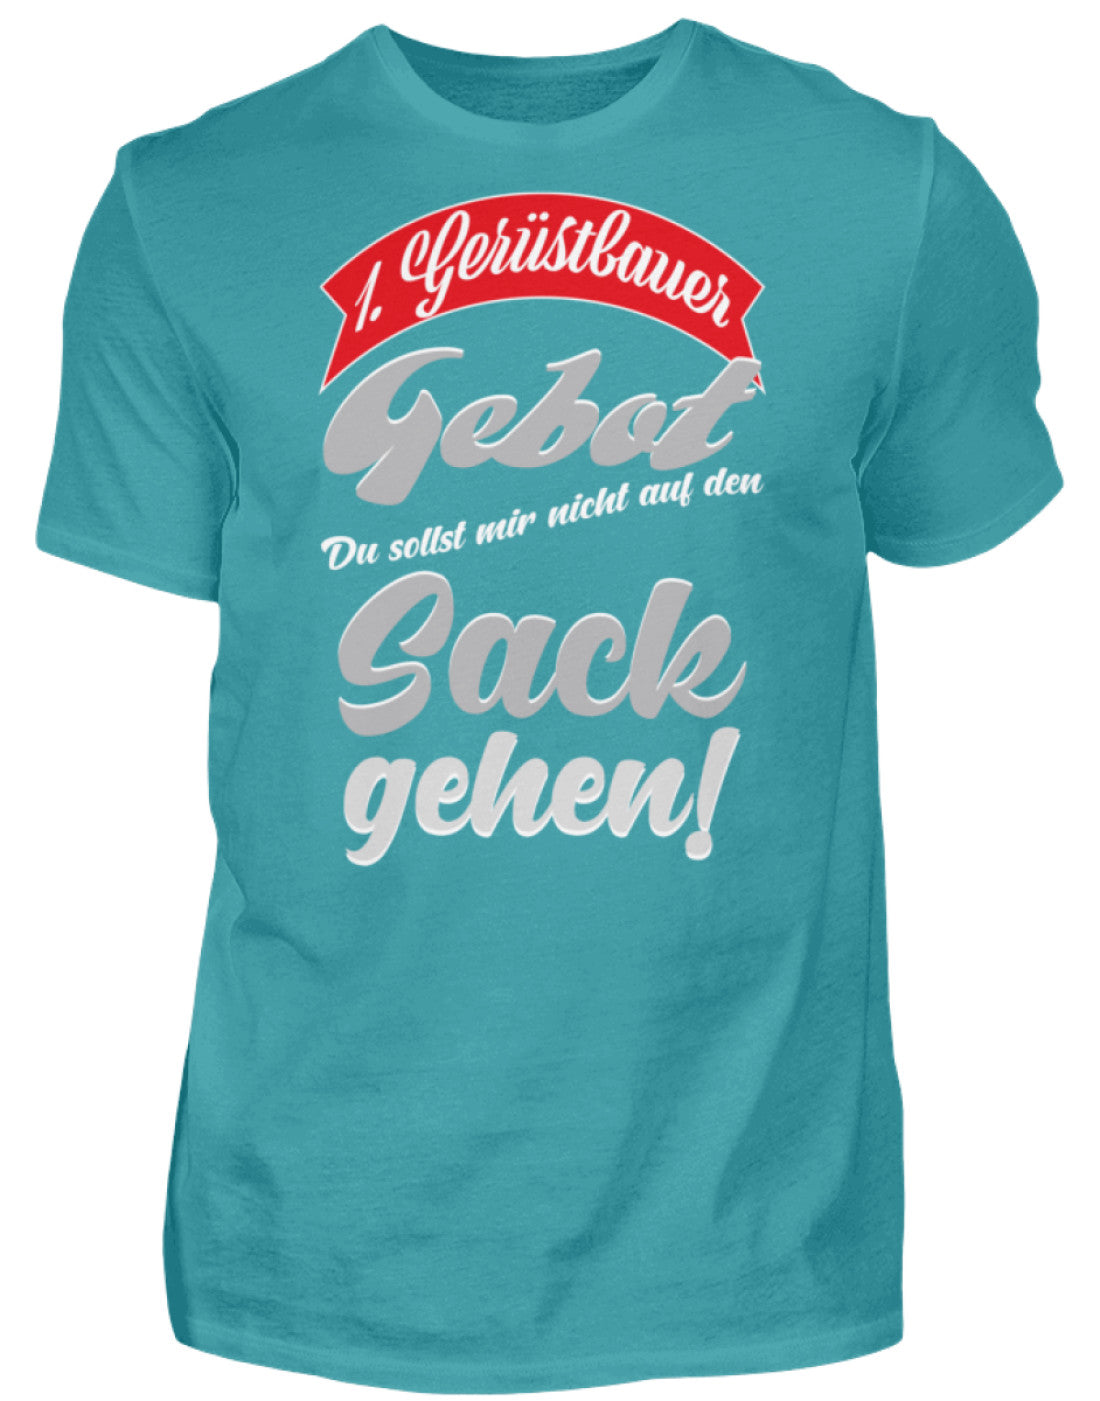 Gerüstbauer T-Shirt 1. Gerüstbauer Gebot €24.95 Gerüstbauer - Shop >>